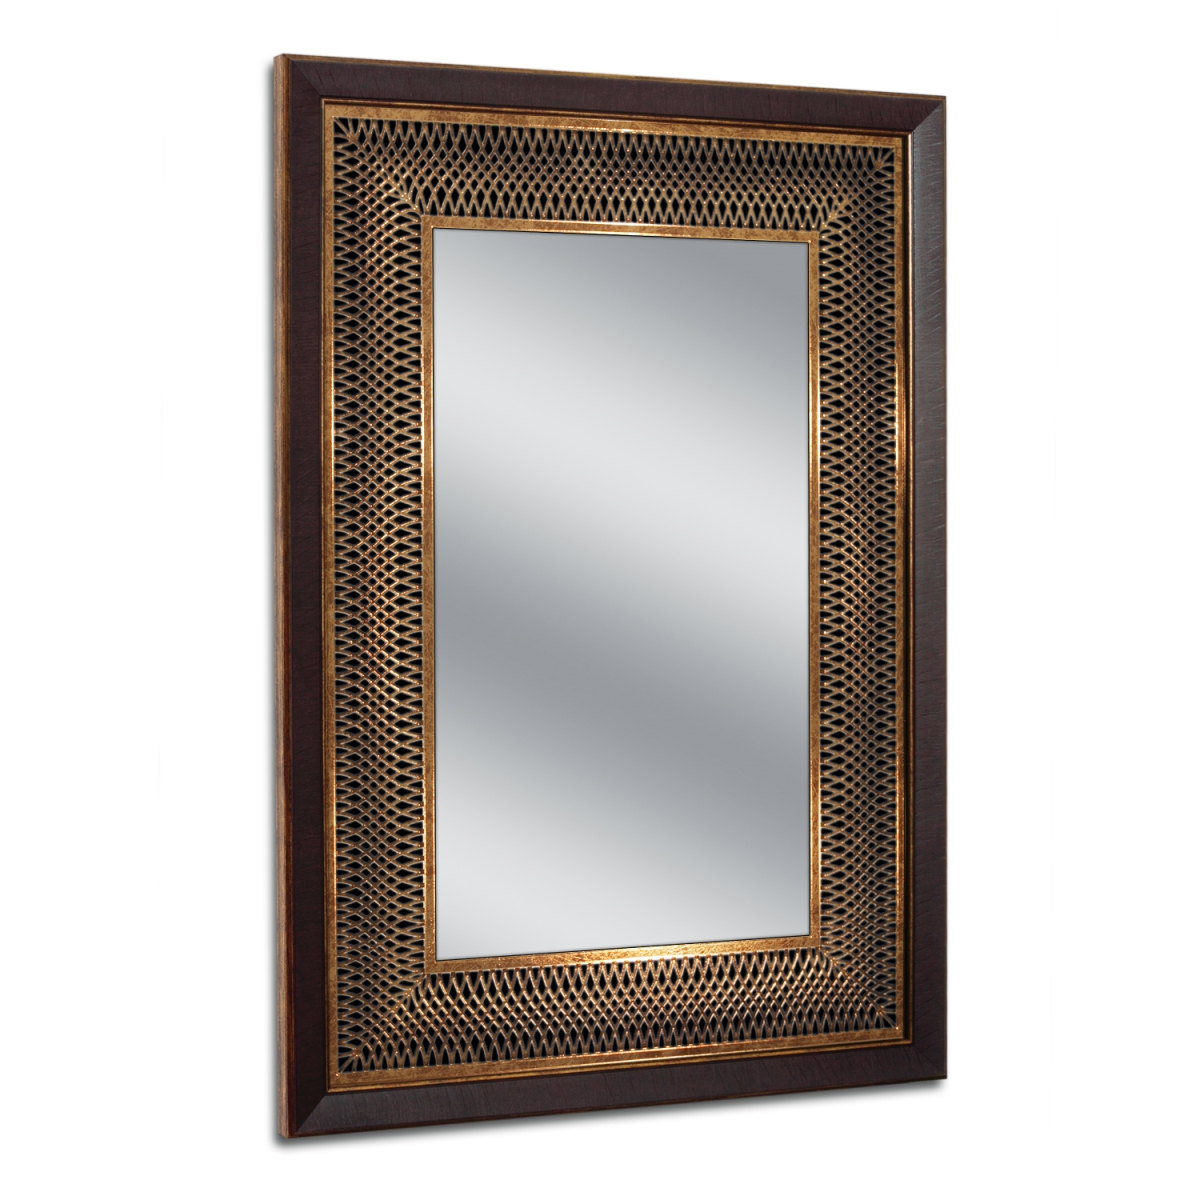 8068 24.75 X 34.75 In. Copper & Bronze Park Avenue Mirror